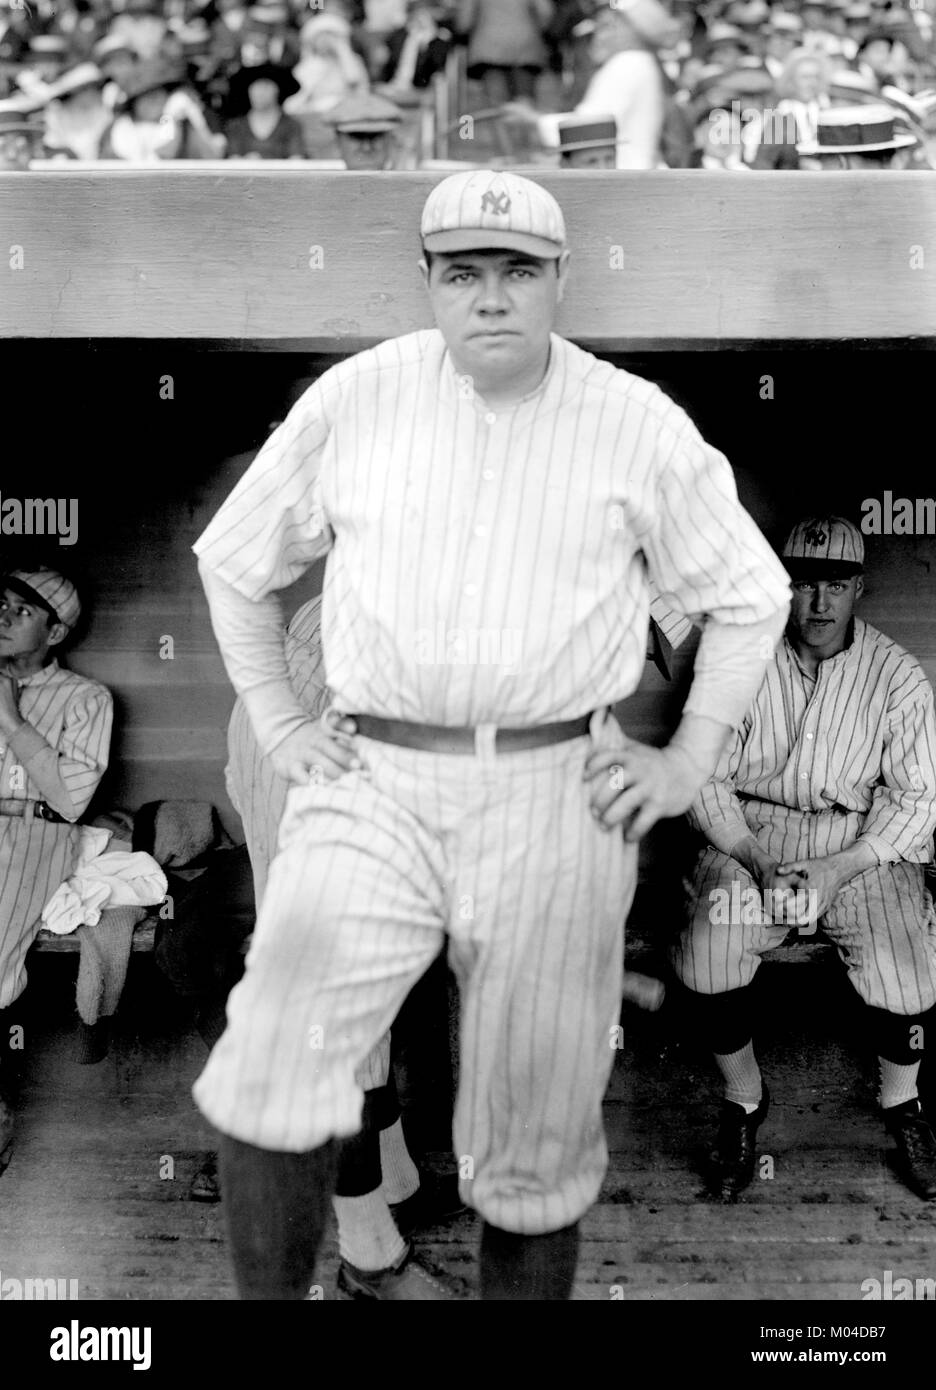 Babe Ruth. Die US-amerikanischen Baseballspieler George Herman "Babe" Ruth Jr. (1895-1948), spielen für die New York Yankees im Juni 1921. Foto von Bain neuer Service. Stockfoto